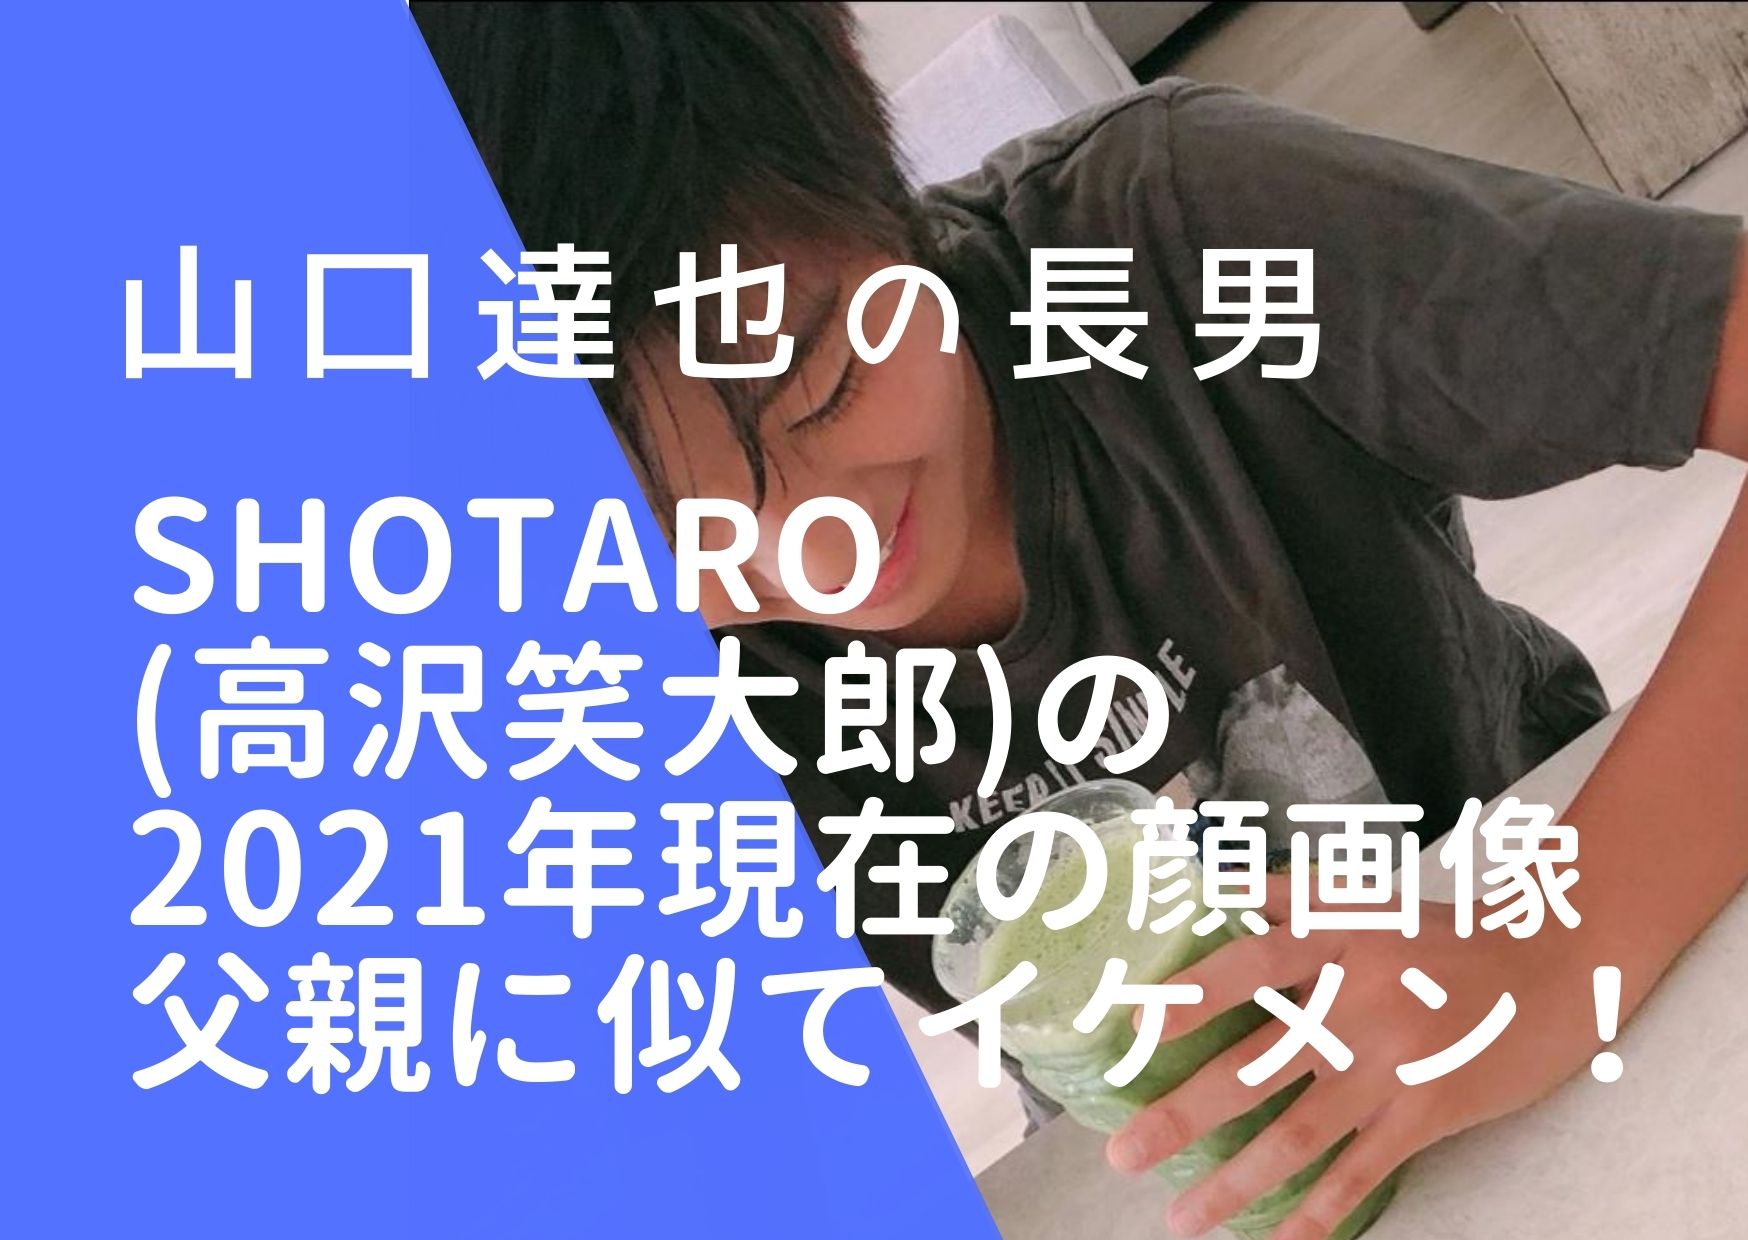 Shotaro(高沢笑大郎)の顔画像